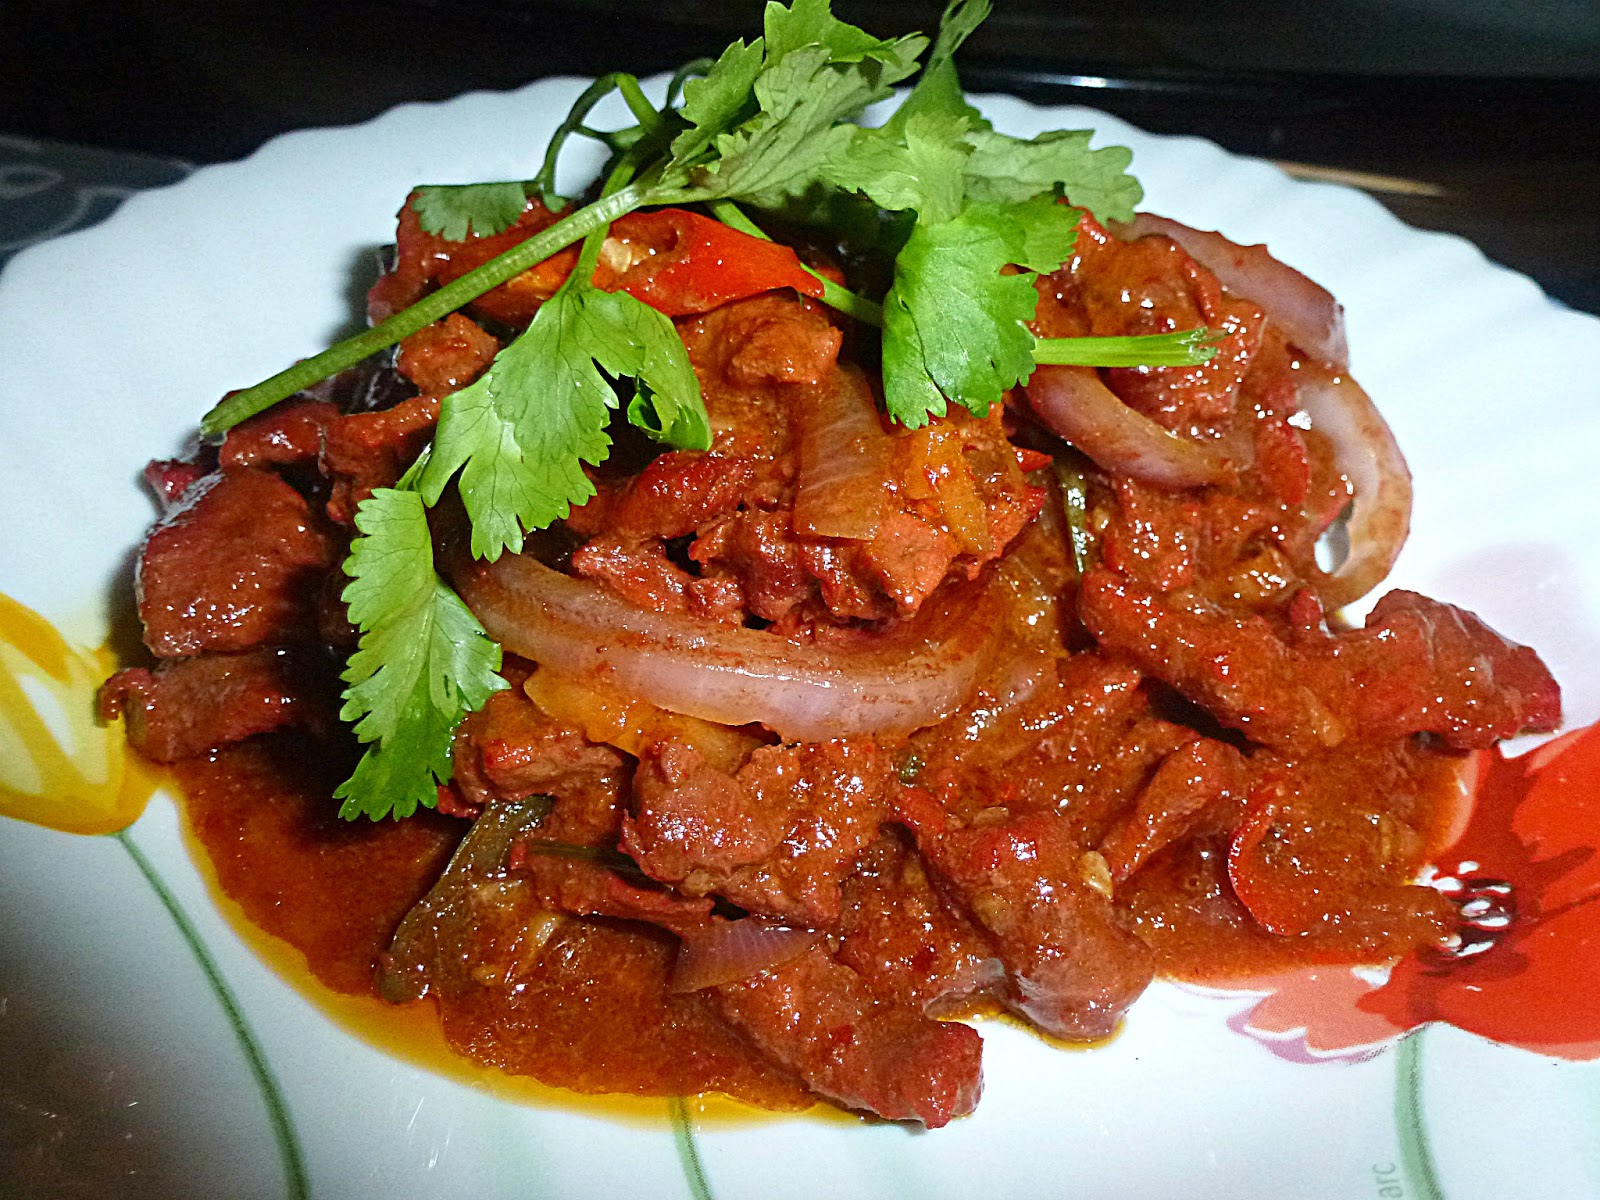 Tertunailah Hasrat Di Hati: Daging Masak Merah Ala Thai